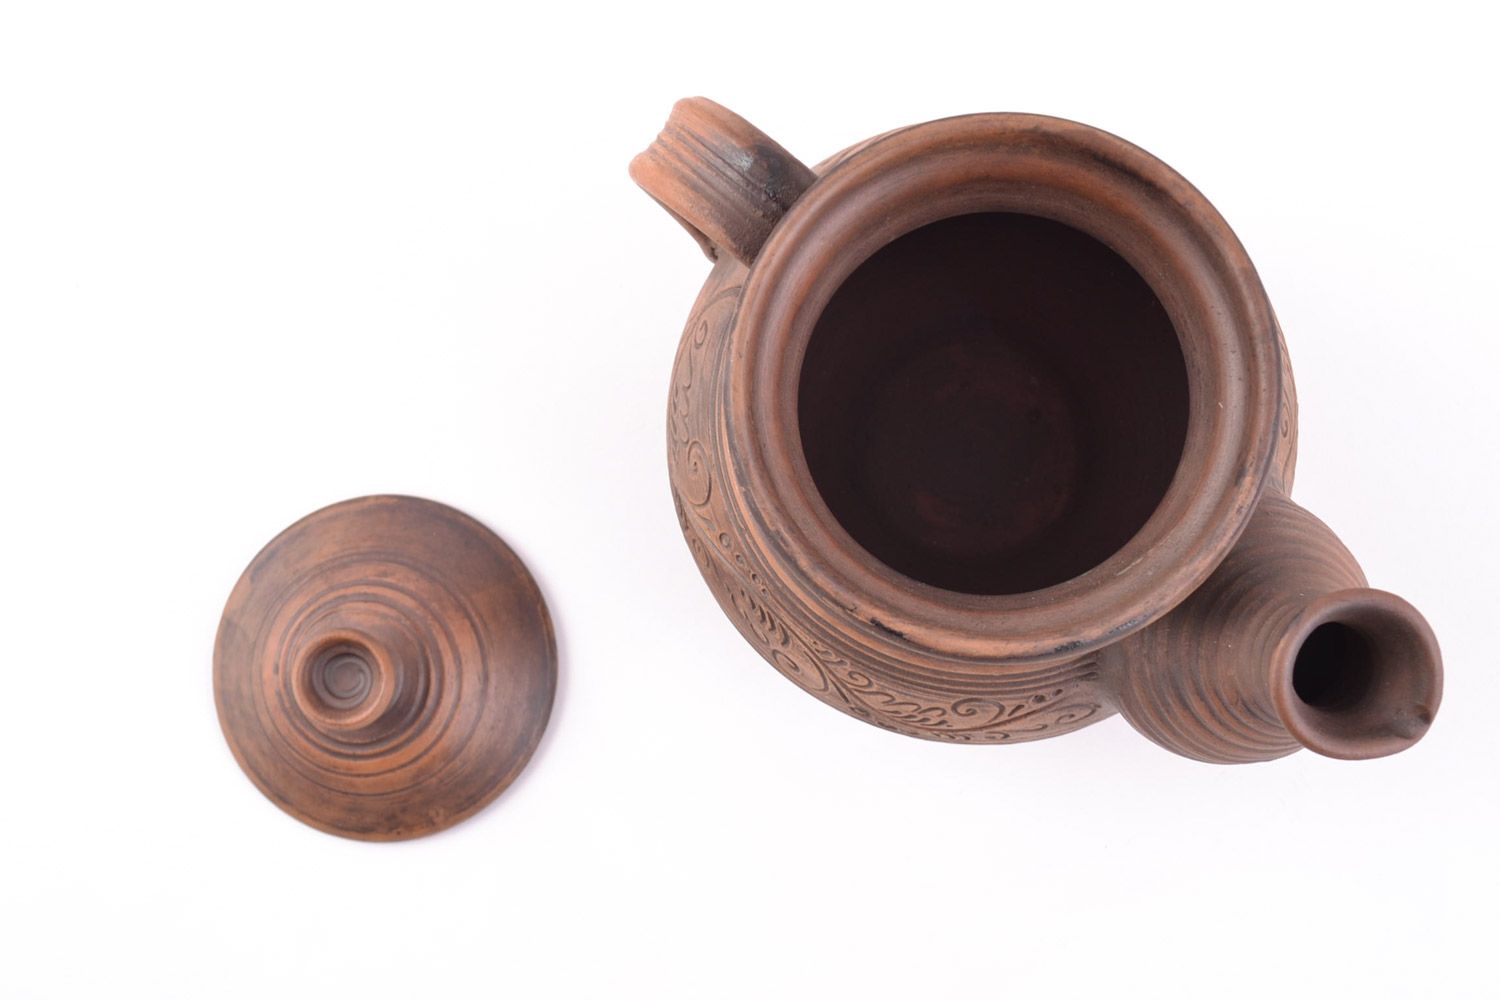 Handmade Keramik Teekanne mit Muster in Milchbrennen Technik schön elegant 400 ml foto 3